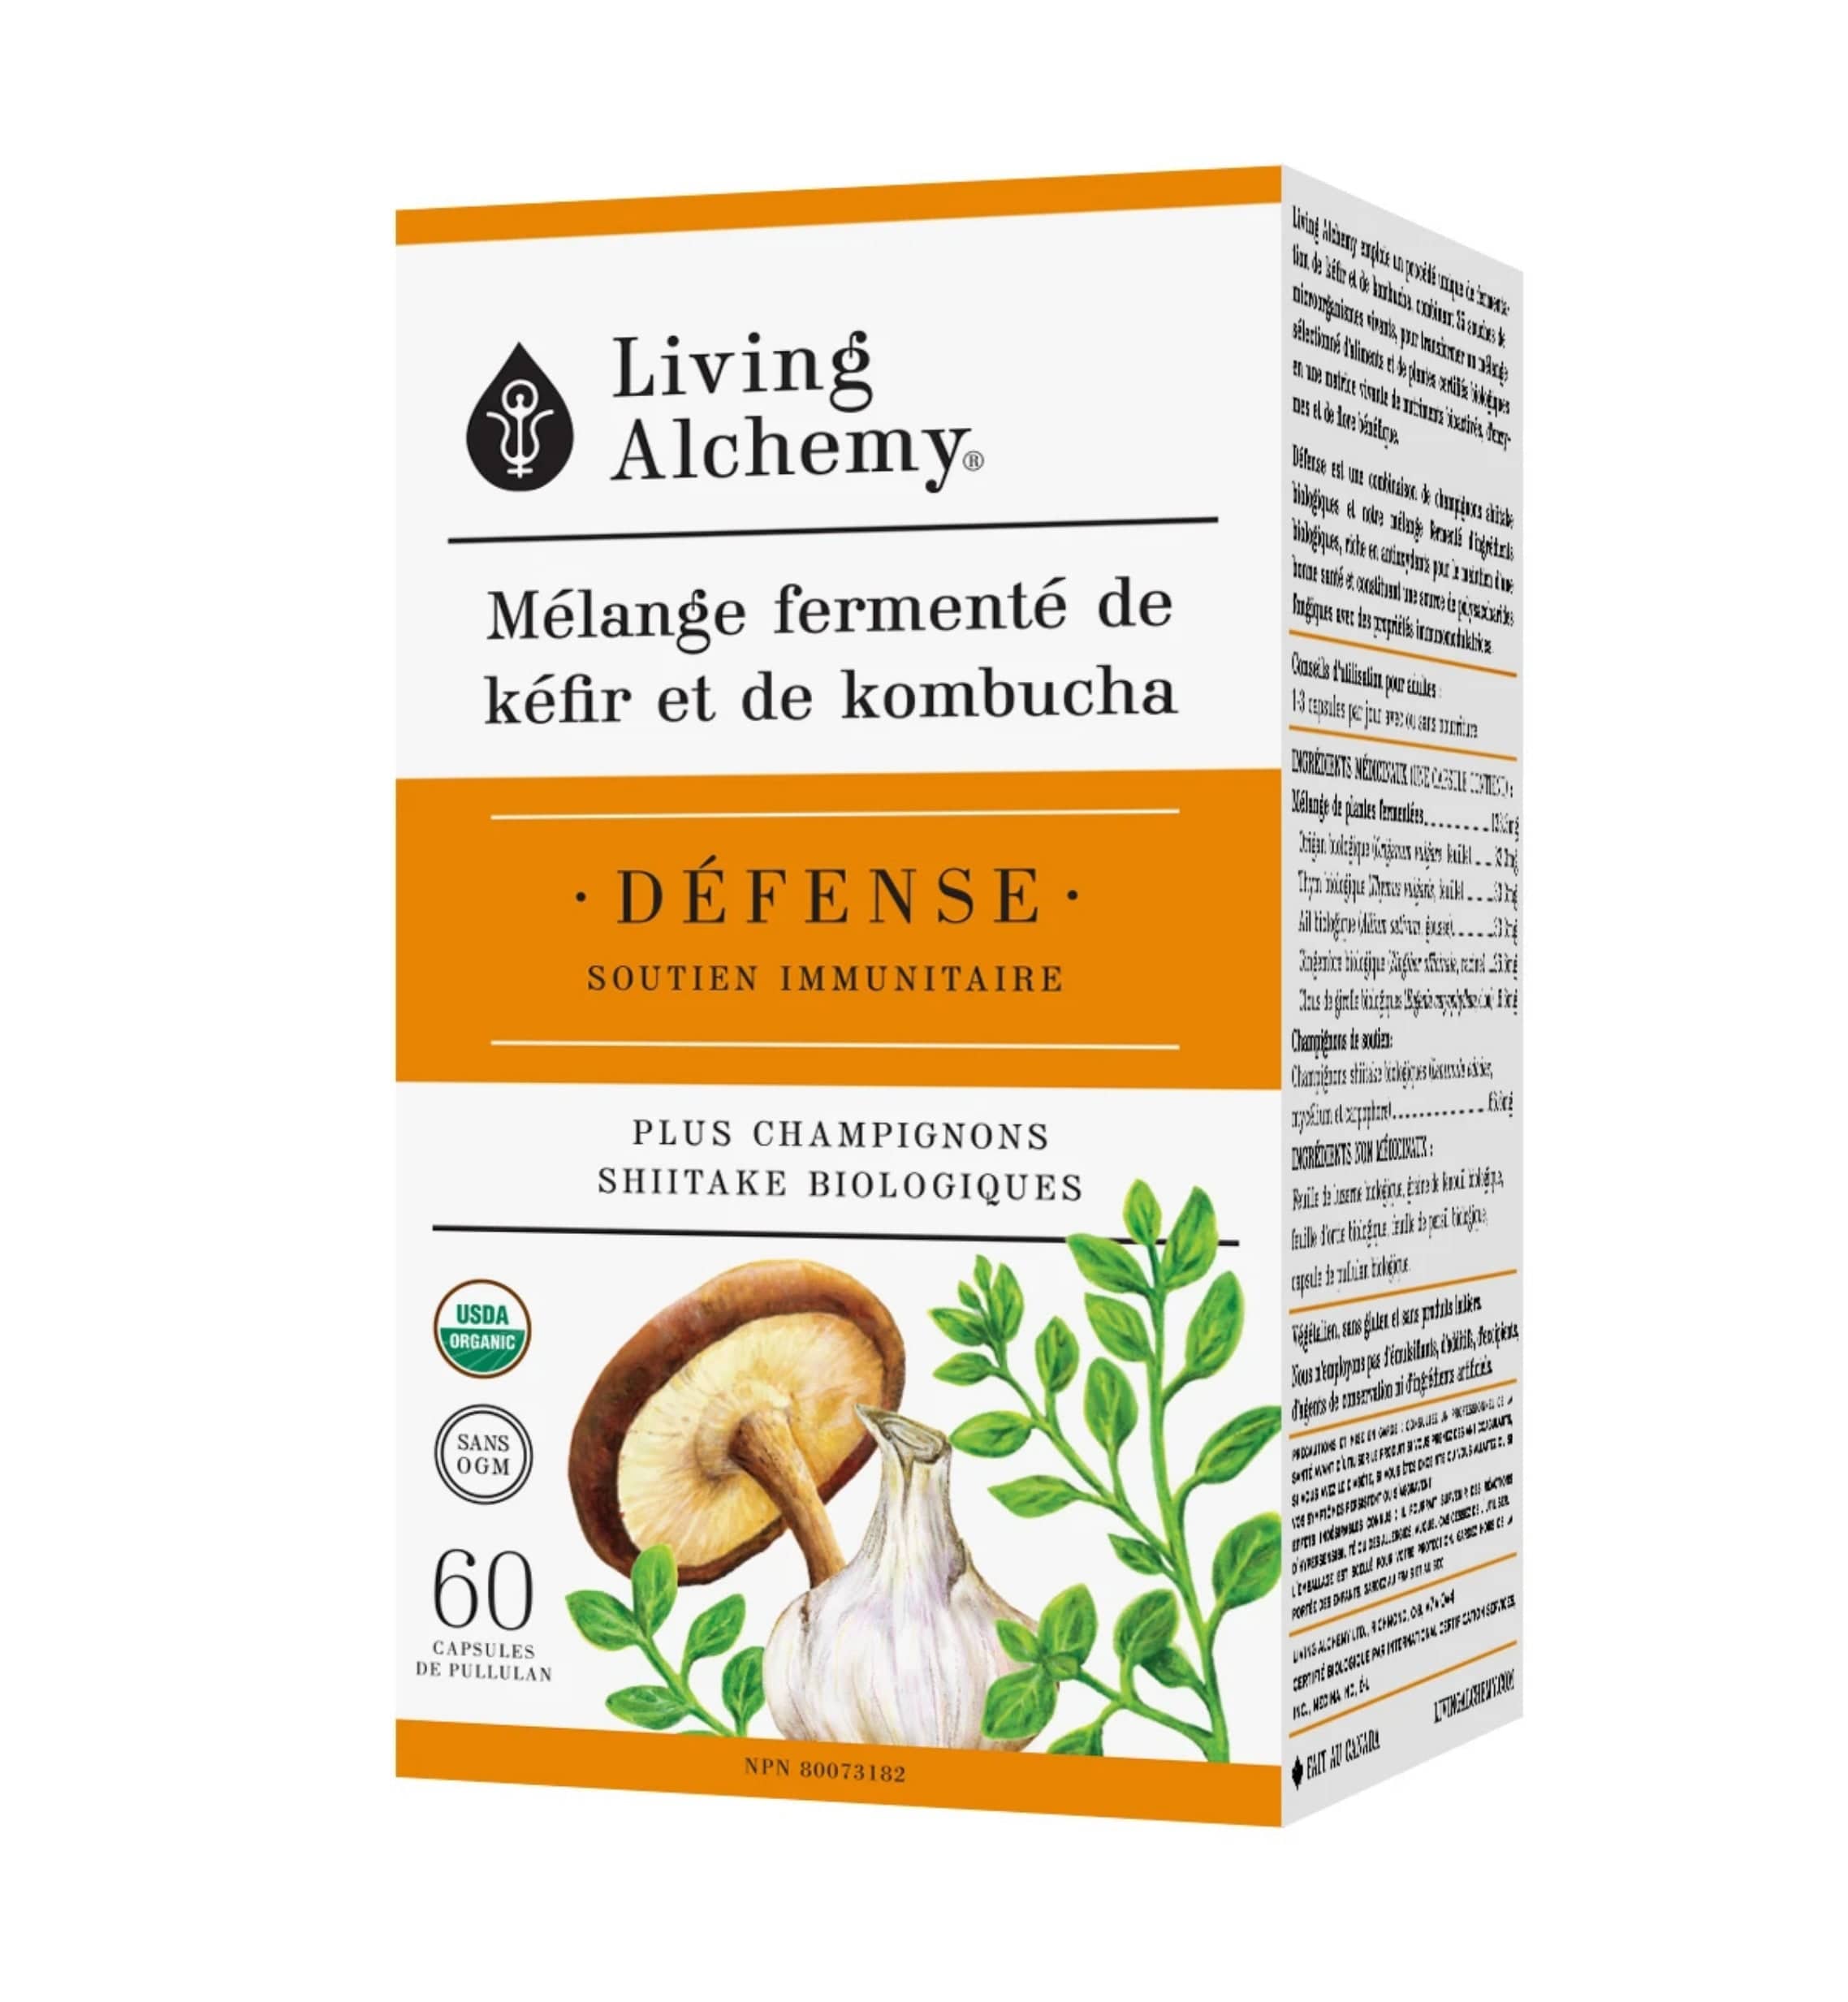 LIVING ALCHEMY Suppléments Mélange fermenté de kéfir et de kombucha - Défense (soutien immunitaire) 60caps